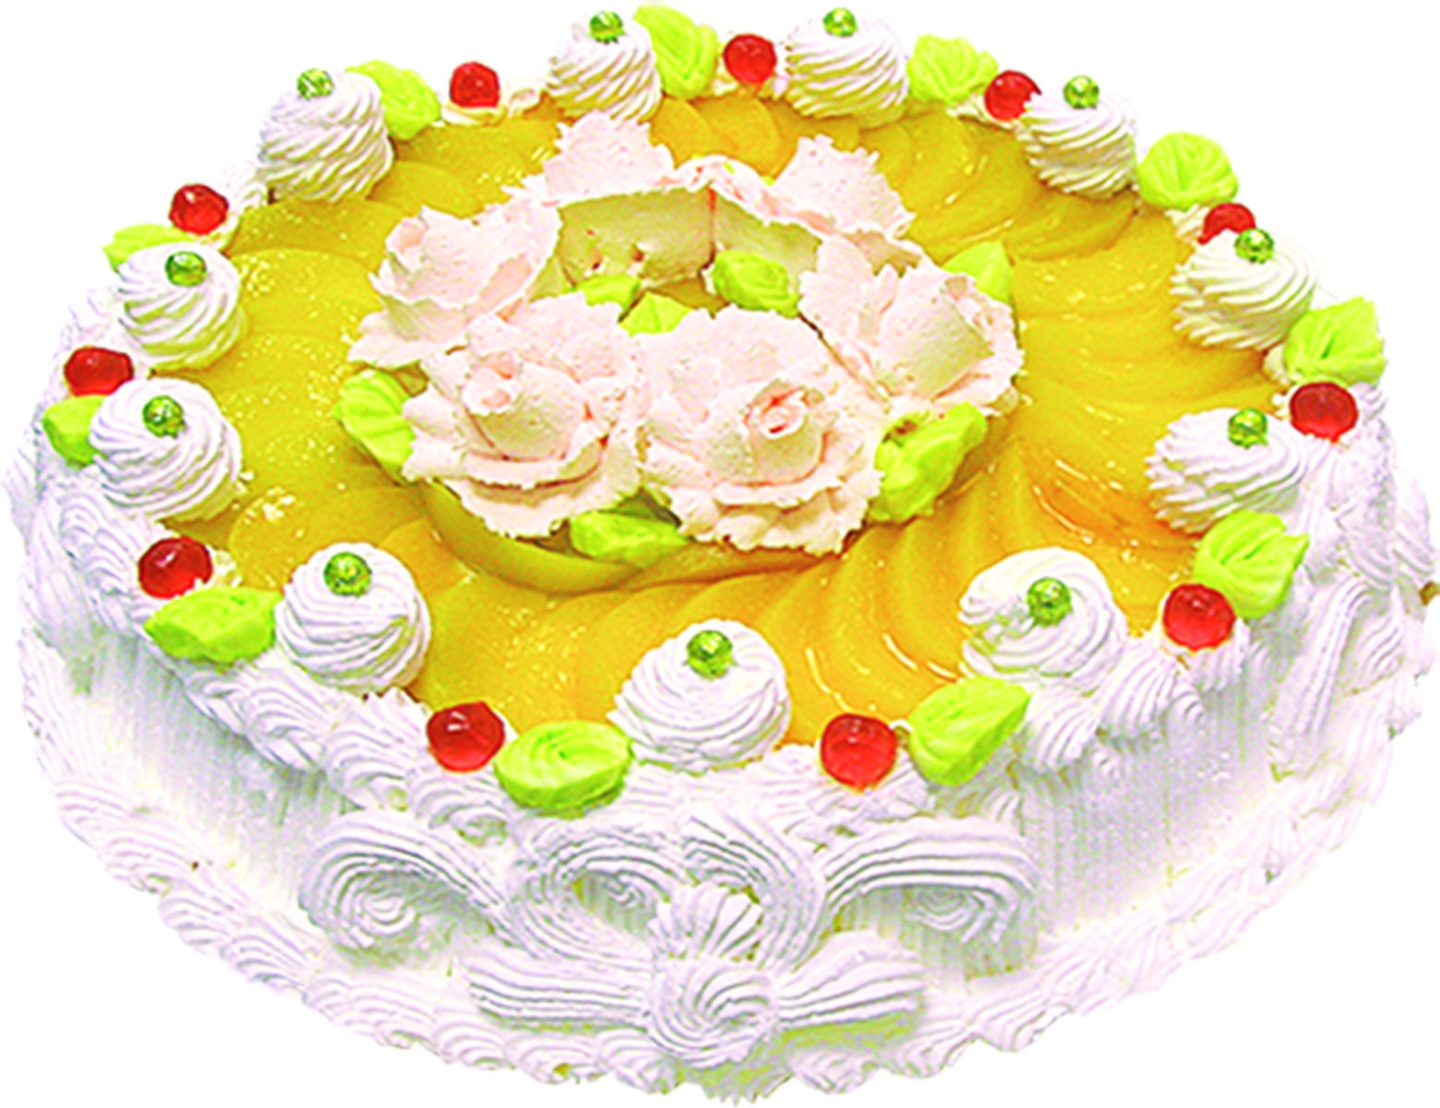 Спб невские берега торт. Радужный торт Невские берега. Ассортимент тортов. Торт Невские берега выше радуги. Праздничные торты ассортимент.